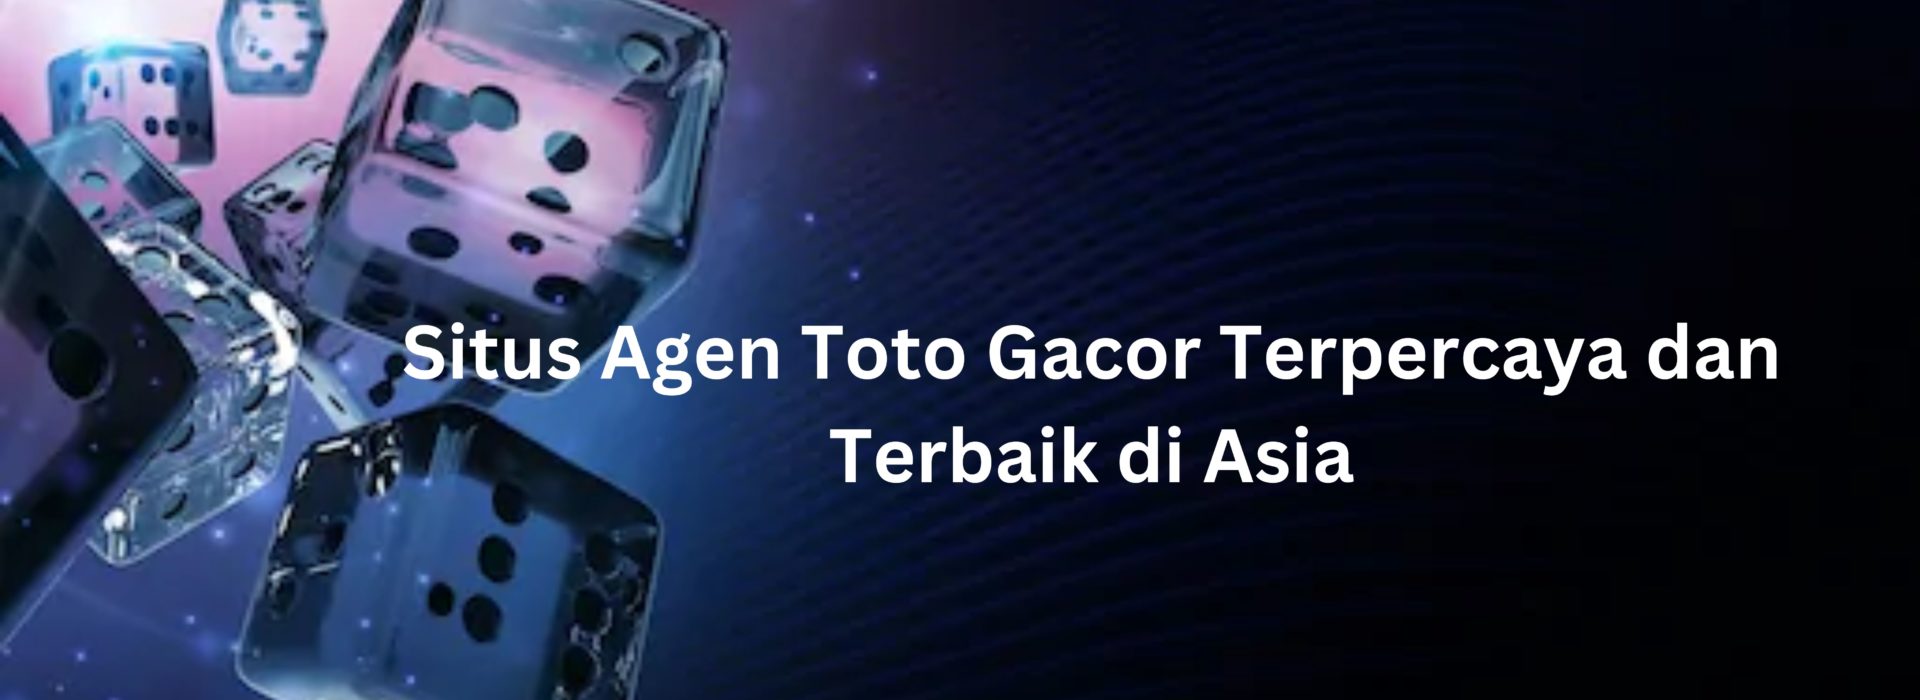 Situs Agen Toto Gacor Terpercaya dan Terbaik di Asia